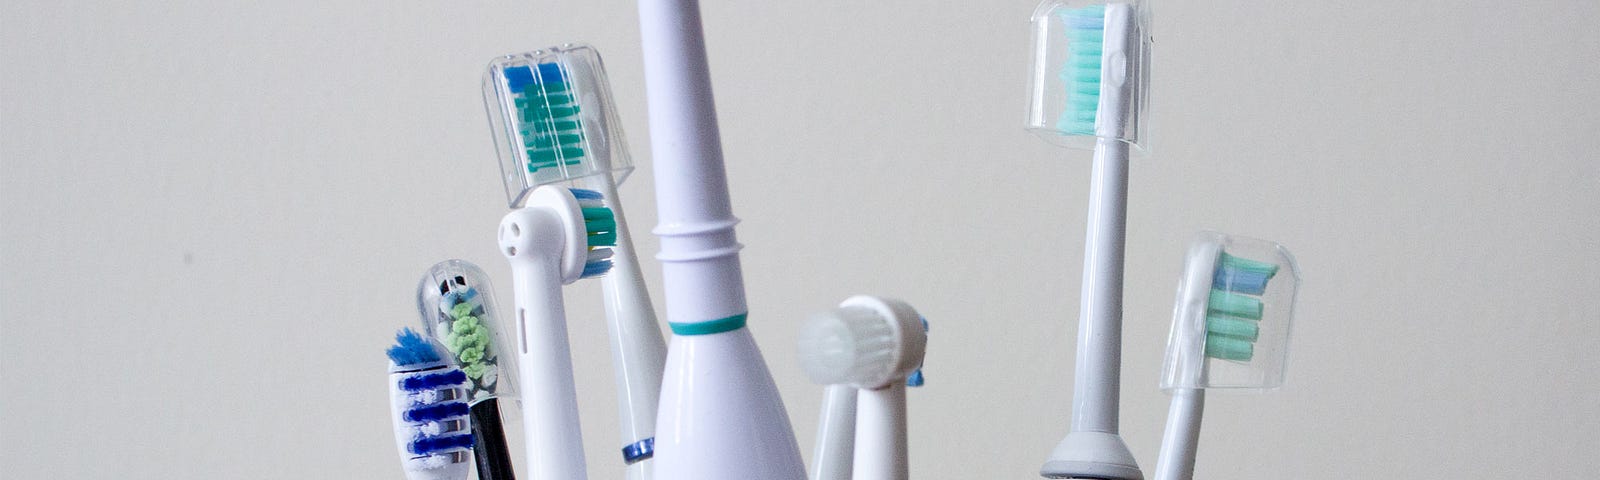 польза и вред электрической зубной щетки